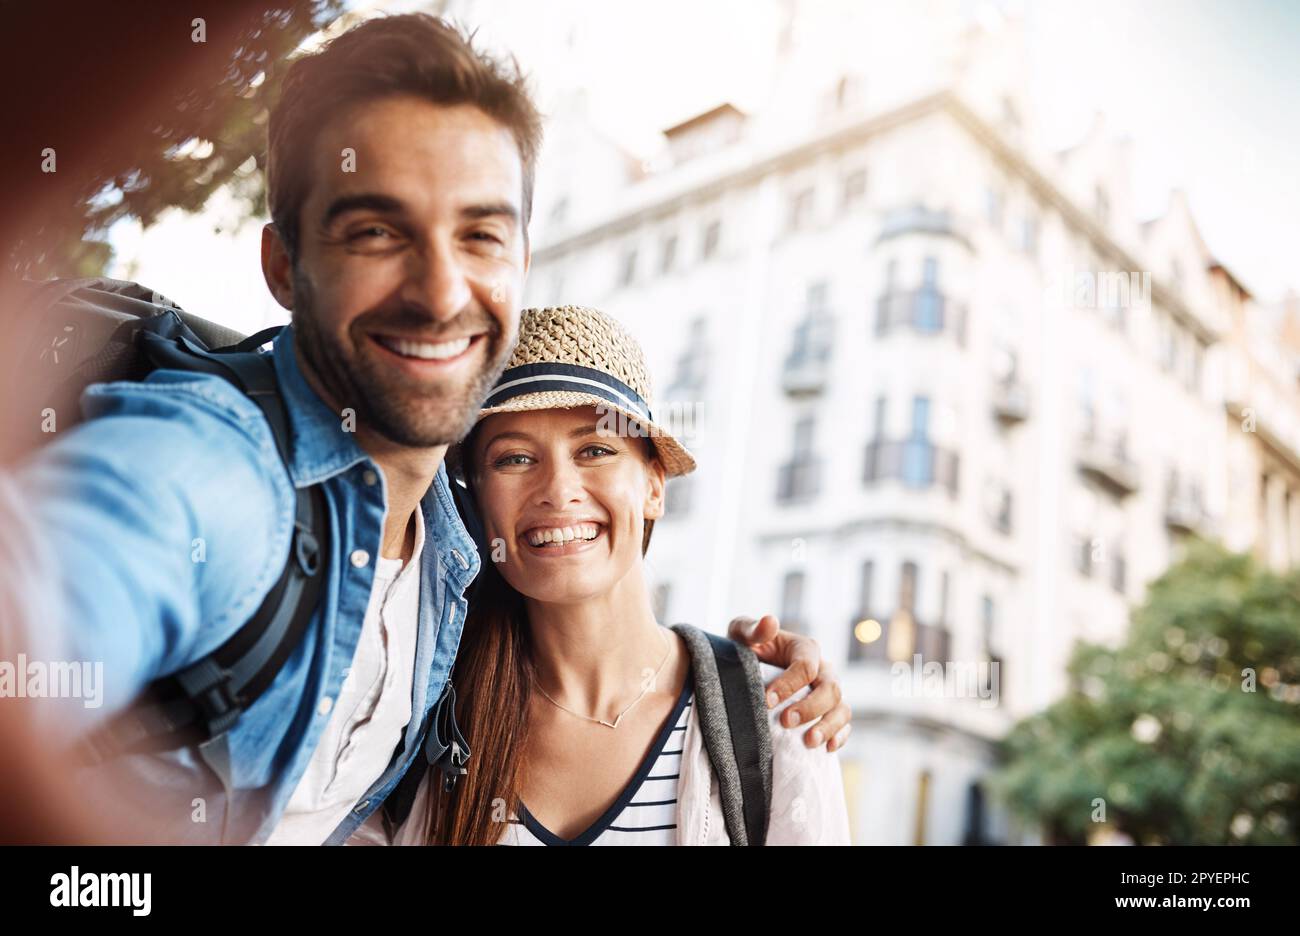 Envoyer un peu d'amour à la maison. Portrait court d'un jeune couple affectueux qui prend un selfie alors qu'il est en campagne. Banque D'Images